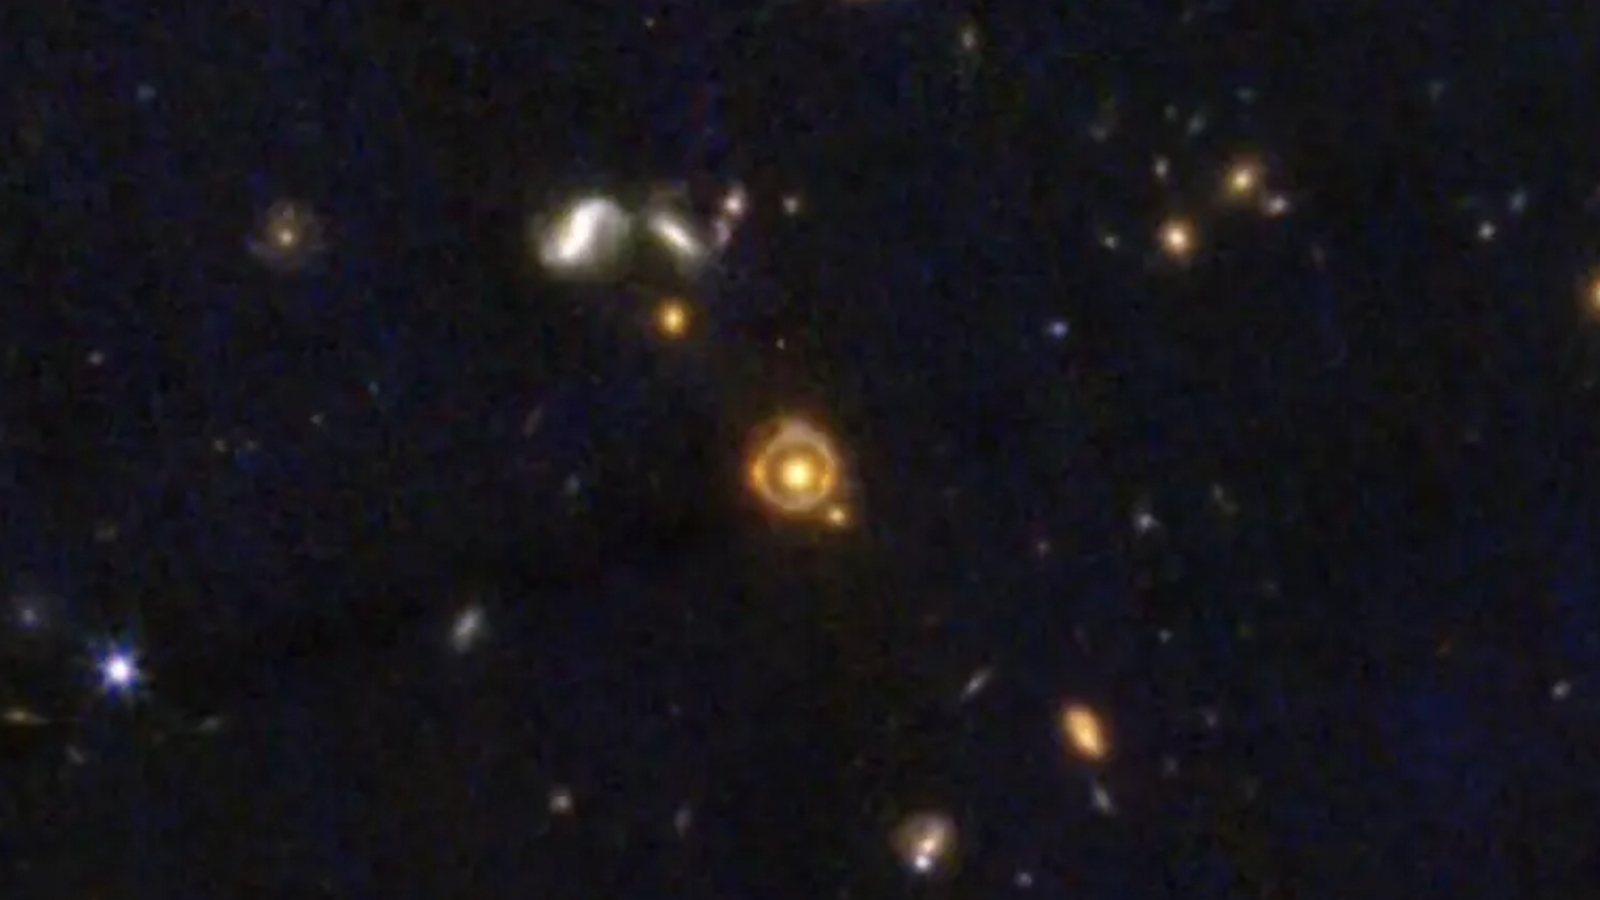 Een ring van oranje licht omringt een geel sterrenstelsel in het met sterren gevulde centrum van de afbeelding